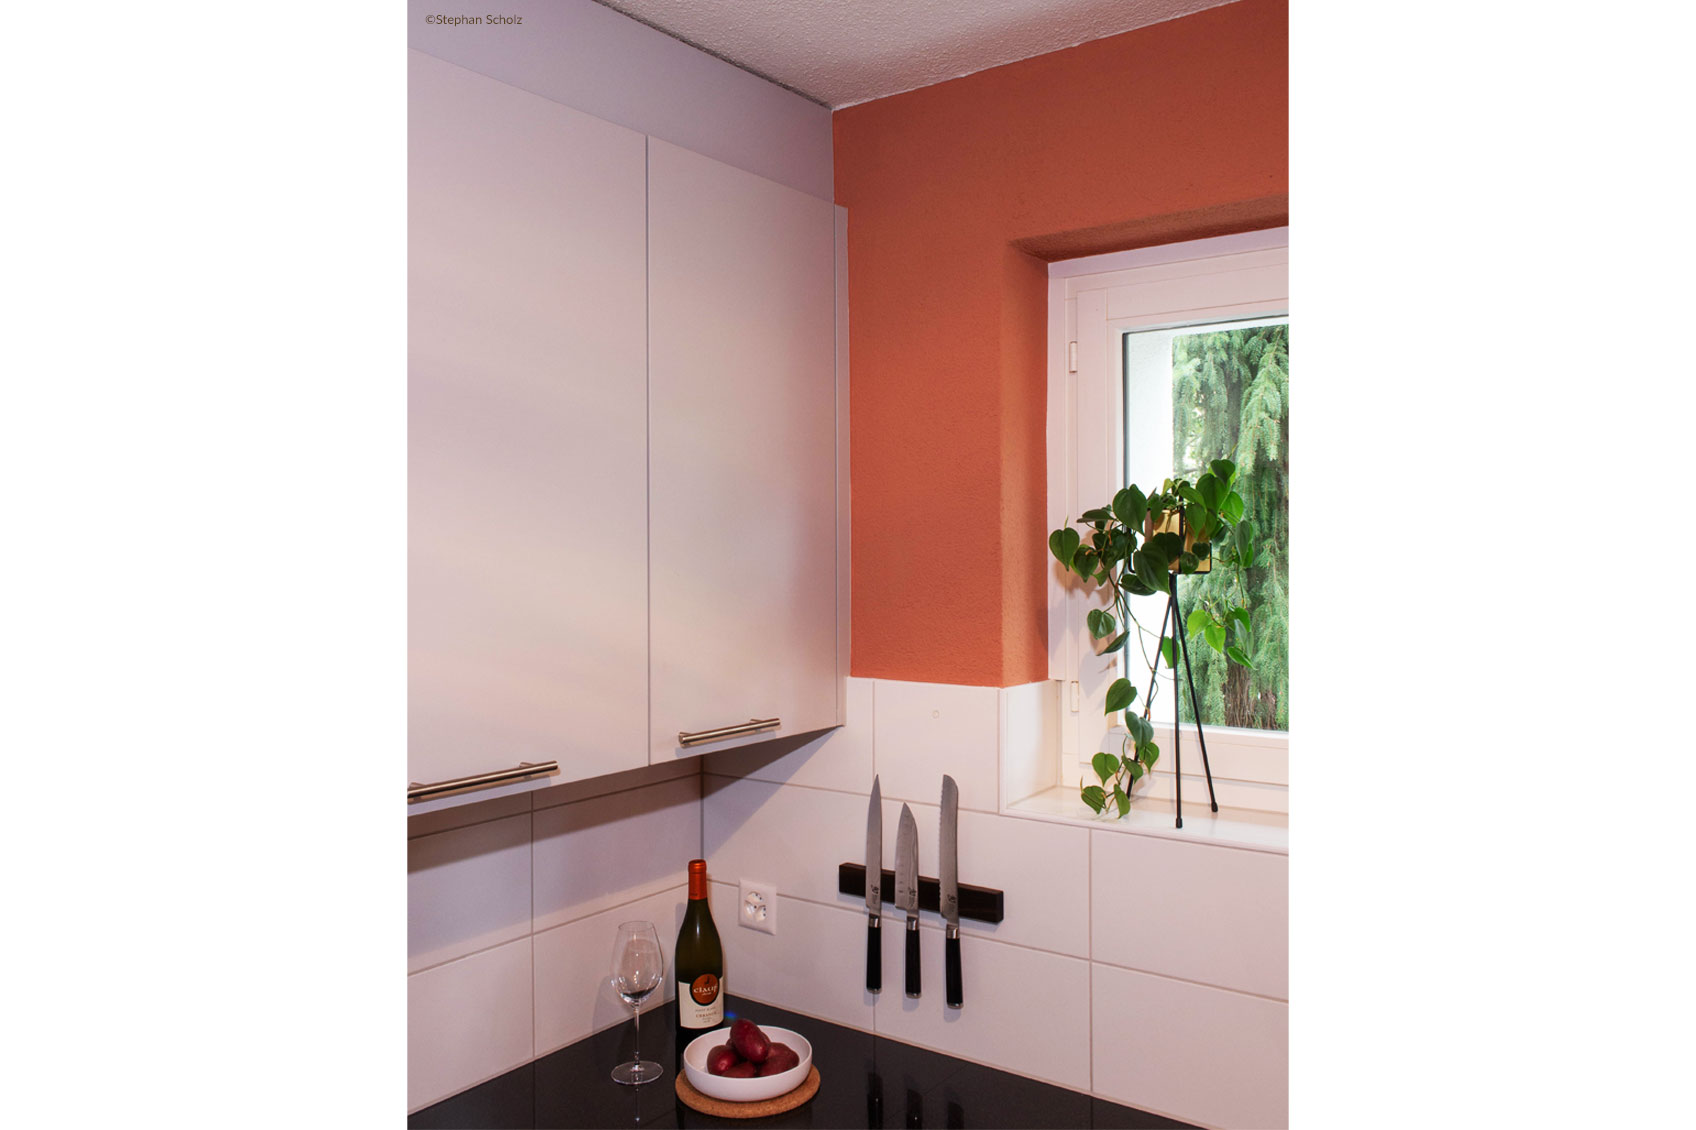 Colour Design Le Corbusier Wall Colour Kitchen Photo Stephan Scholz